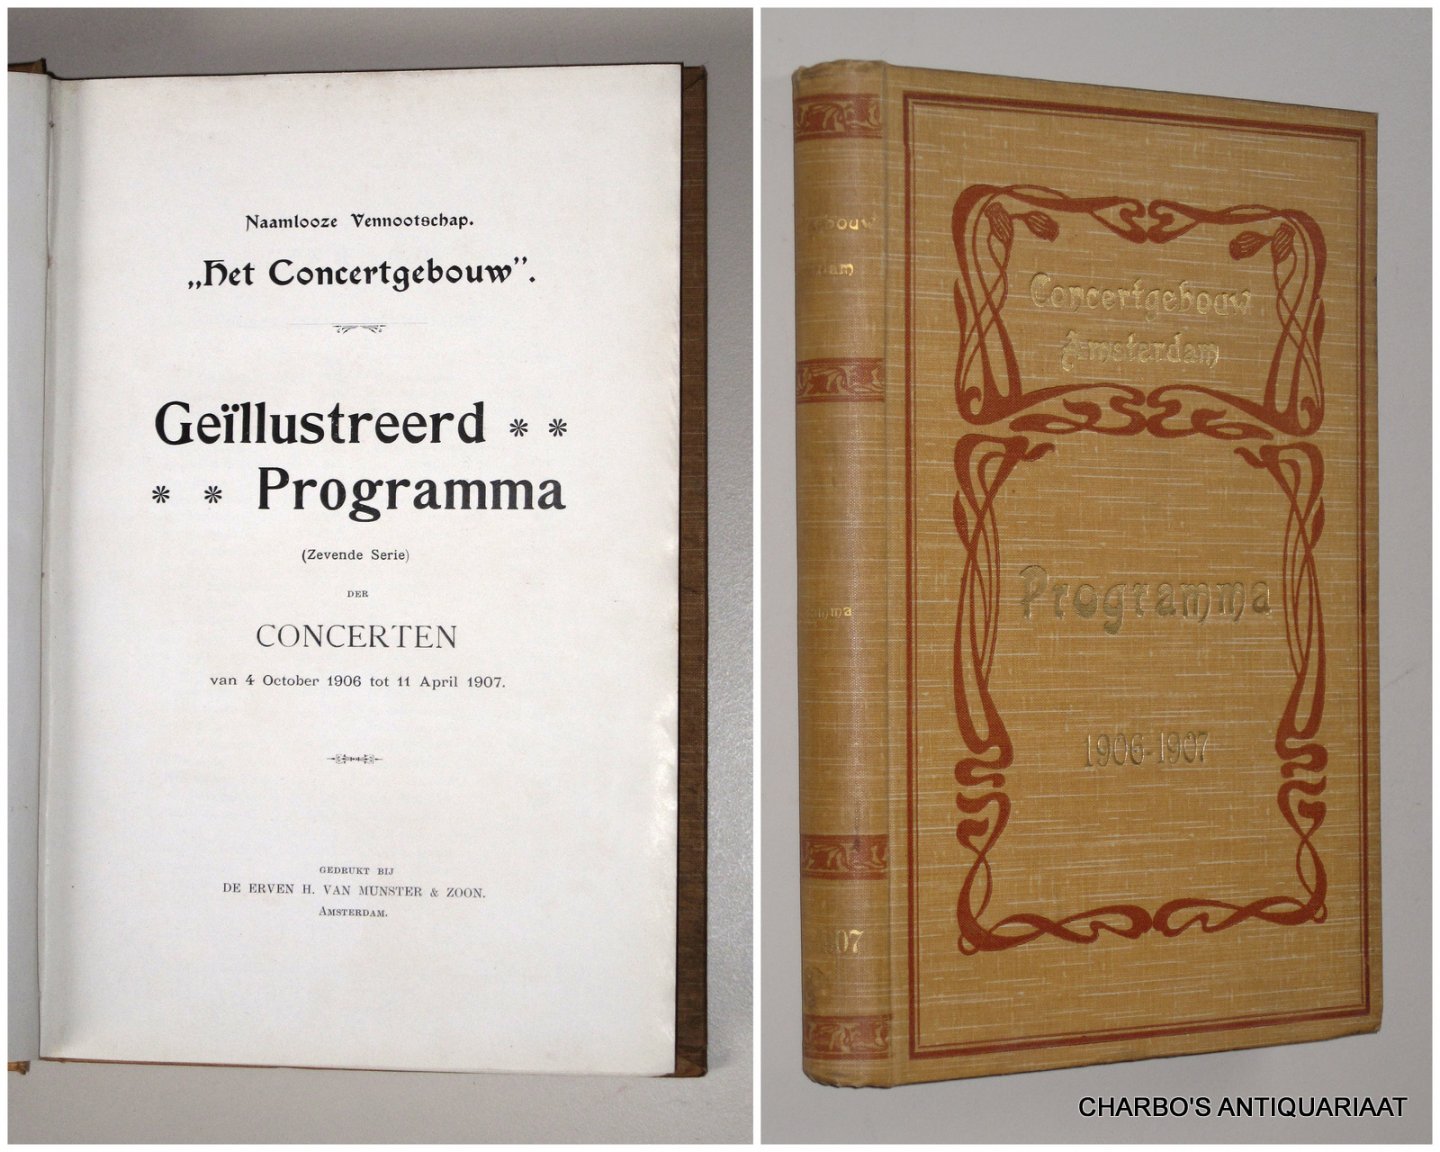 CONCERTGEBOUW, NAAMLOOZE VENNOOTSCHAP HET, - Geïllustreerd programma (zevende serie) der concerten van 4 October 1906 tot 11 April 1907.